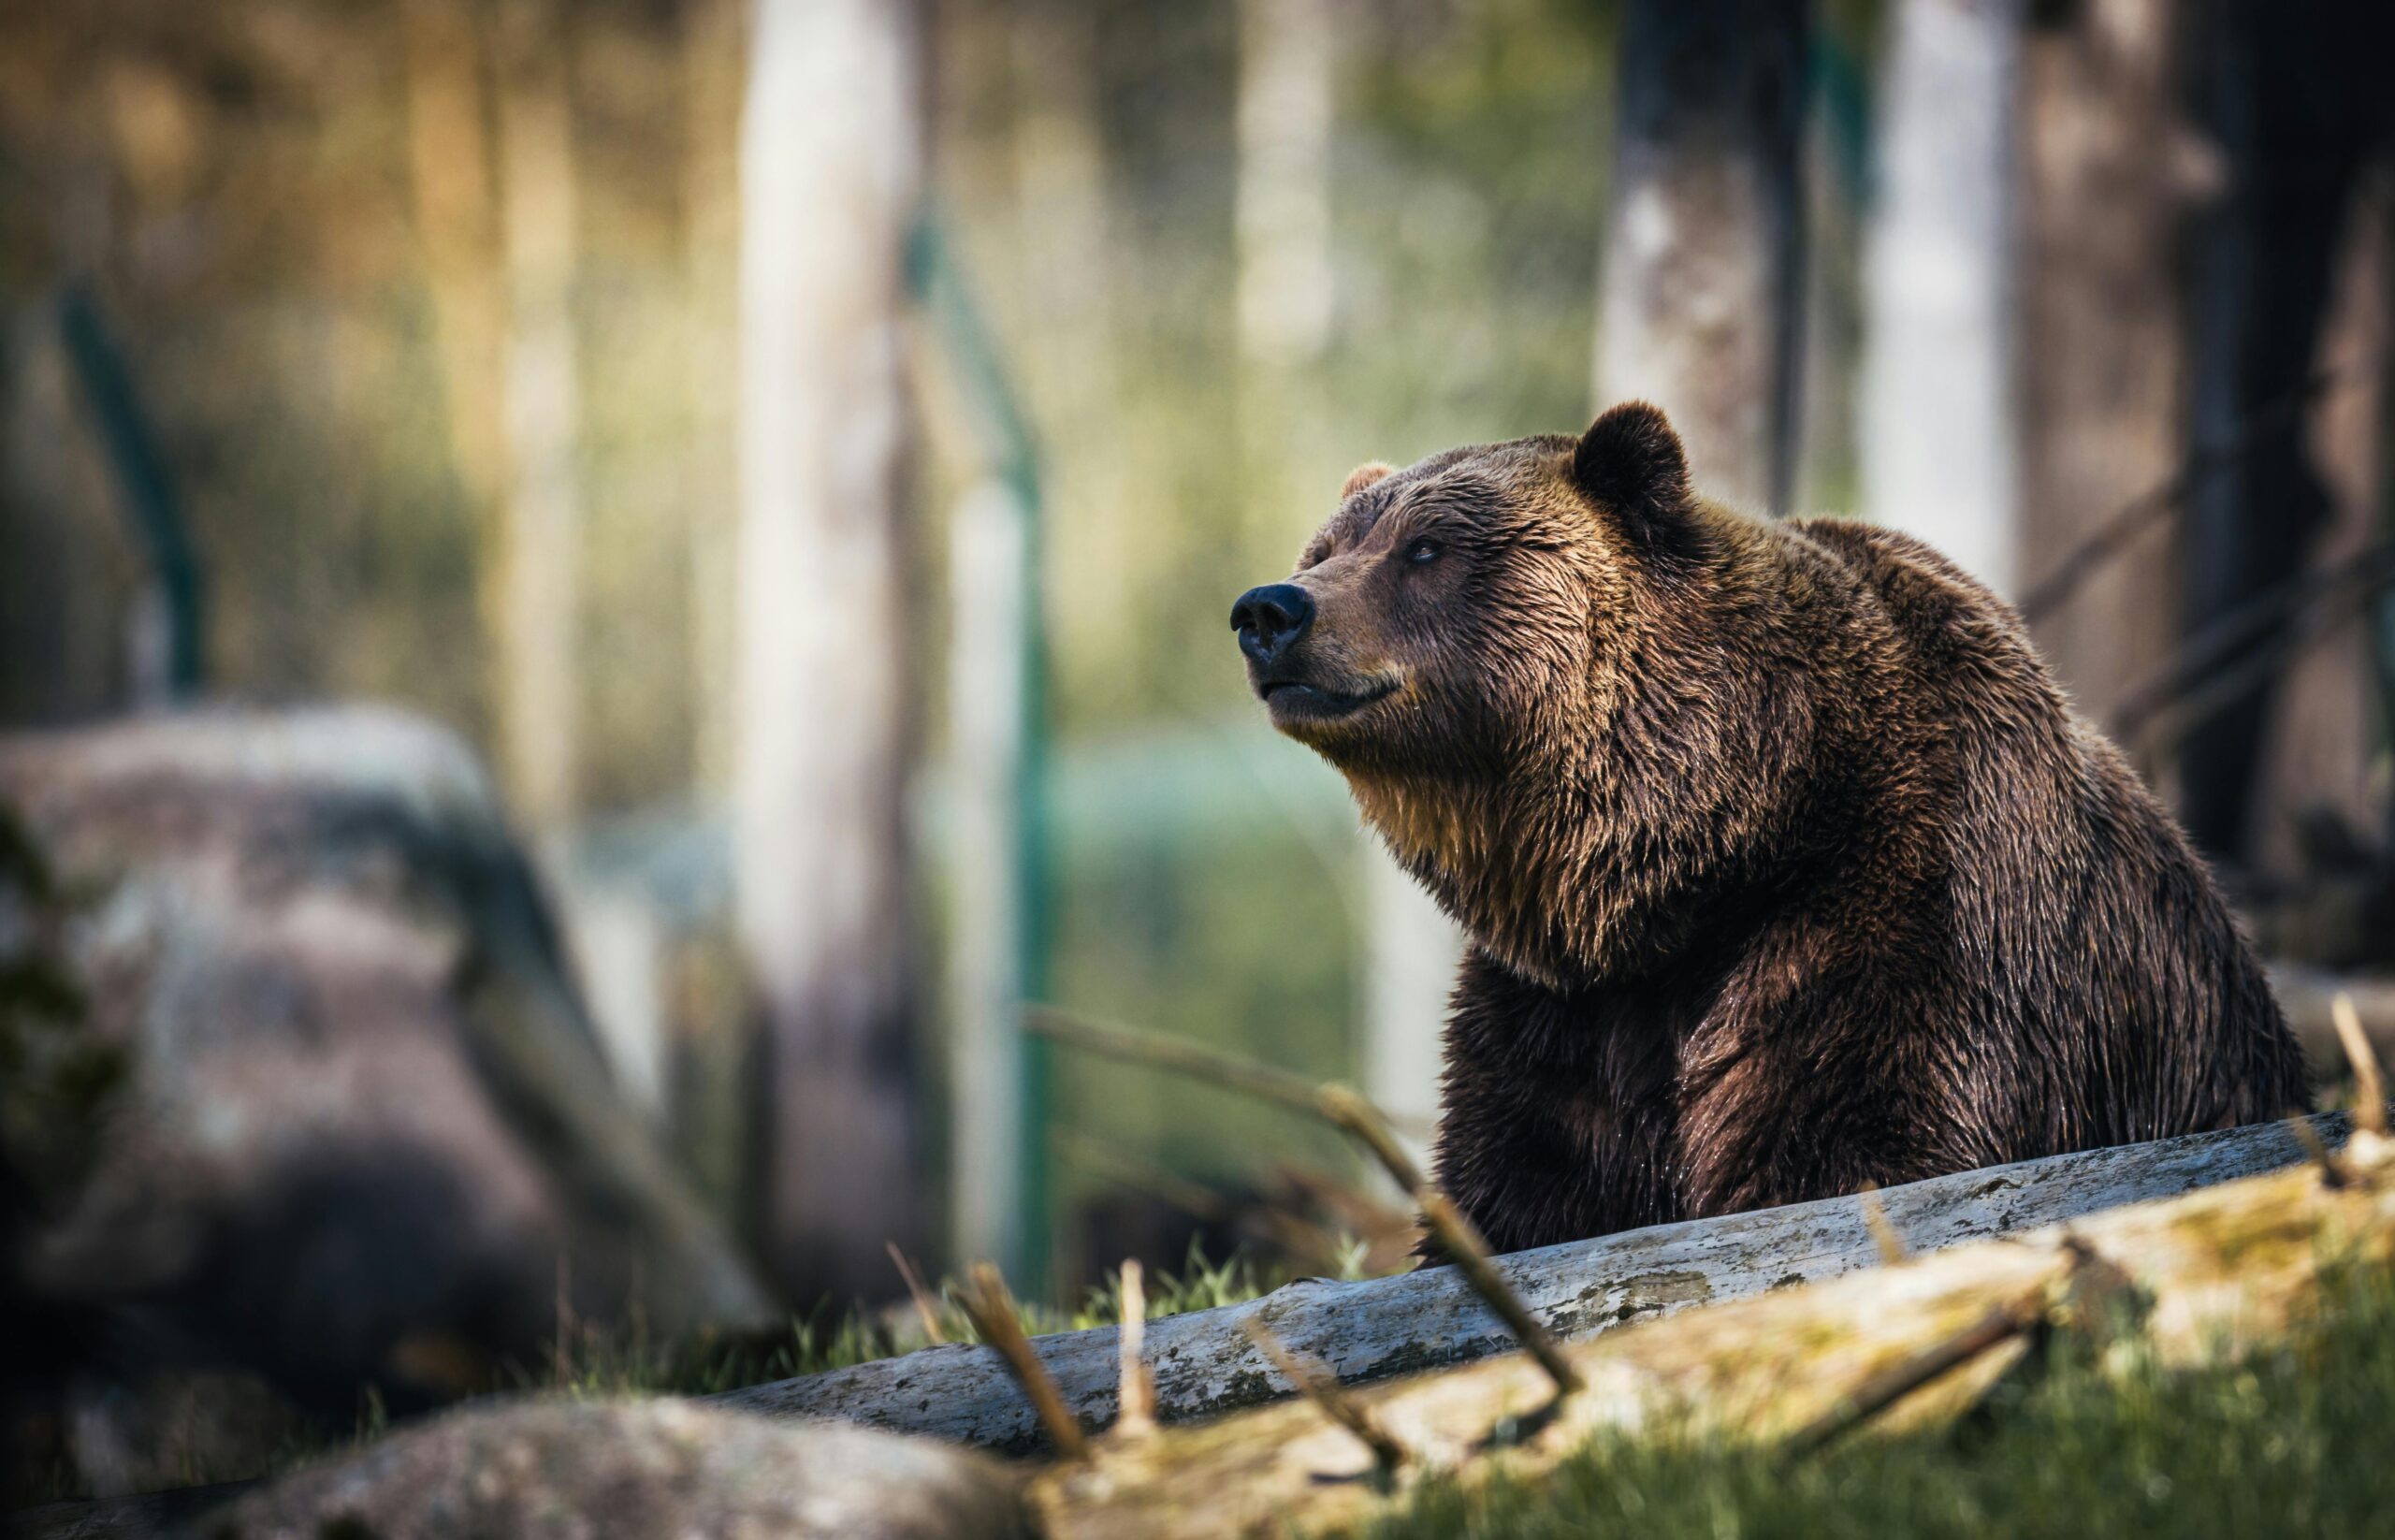 Aumento en la población de Osos Grizzly preocupa tras ataque en granja de Alberta